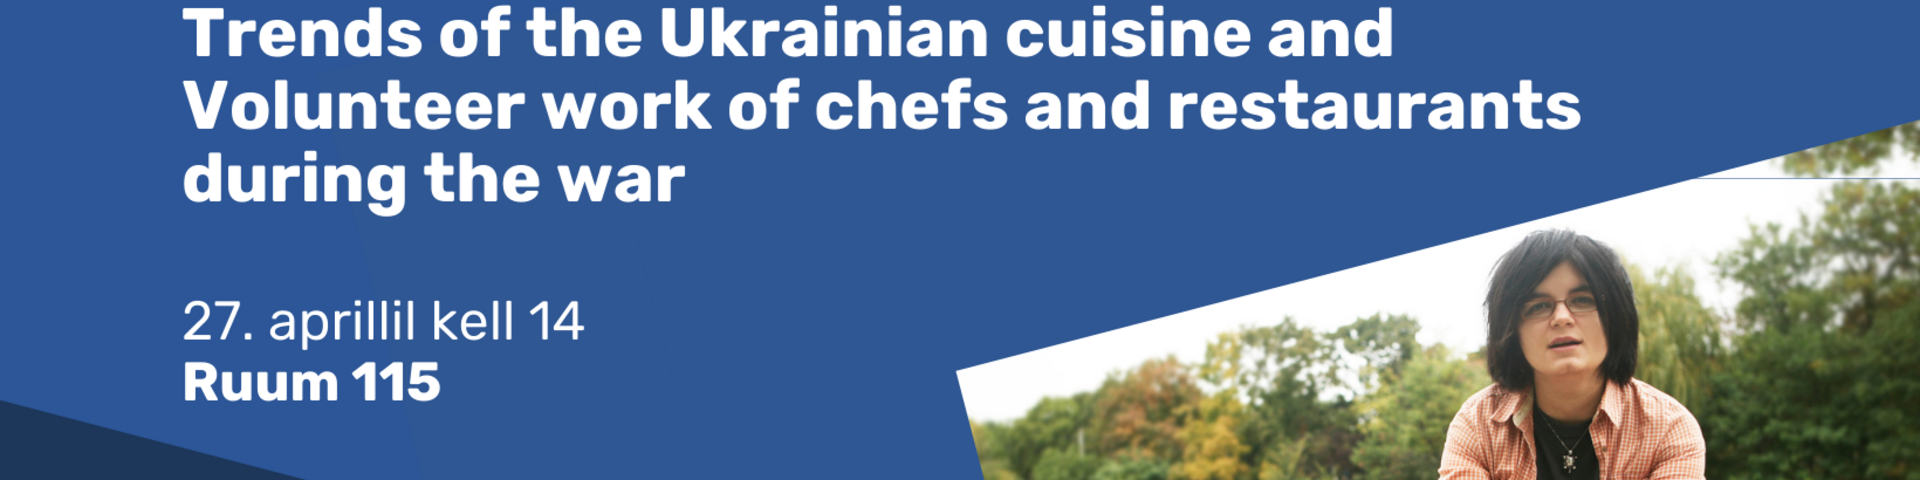 Avalik loeng "Trends of the Ukrainian cuisine and Volunteer work of chefs and restaurants during the war"